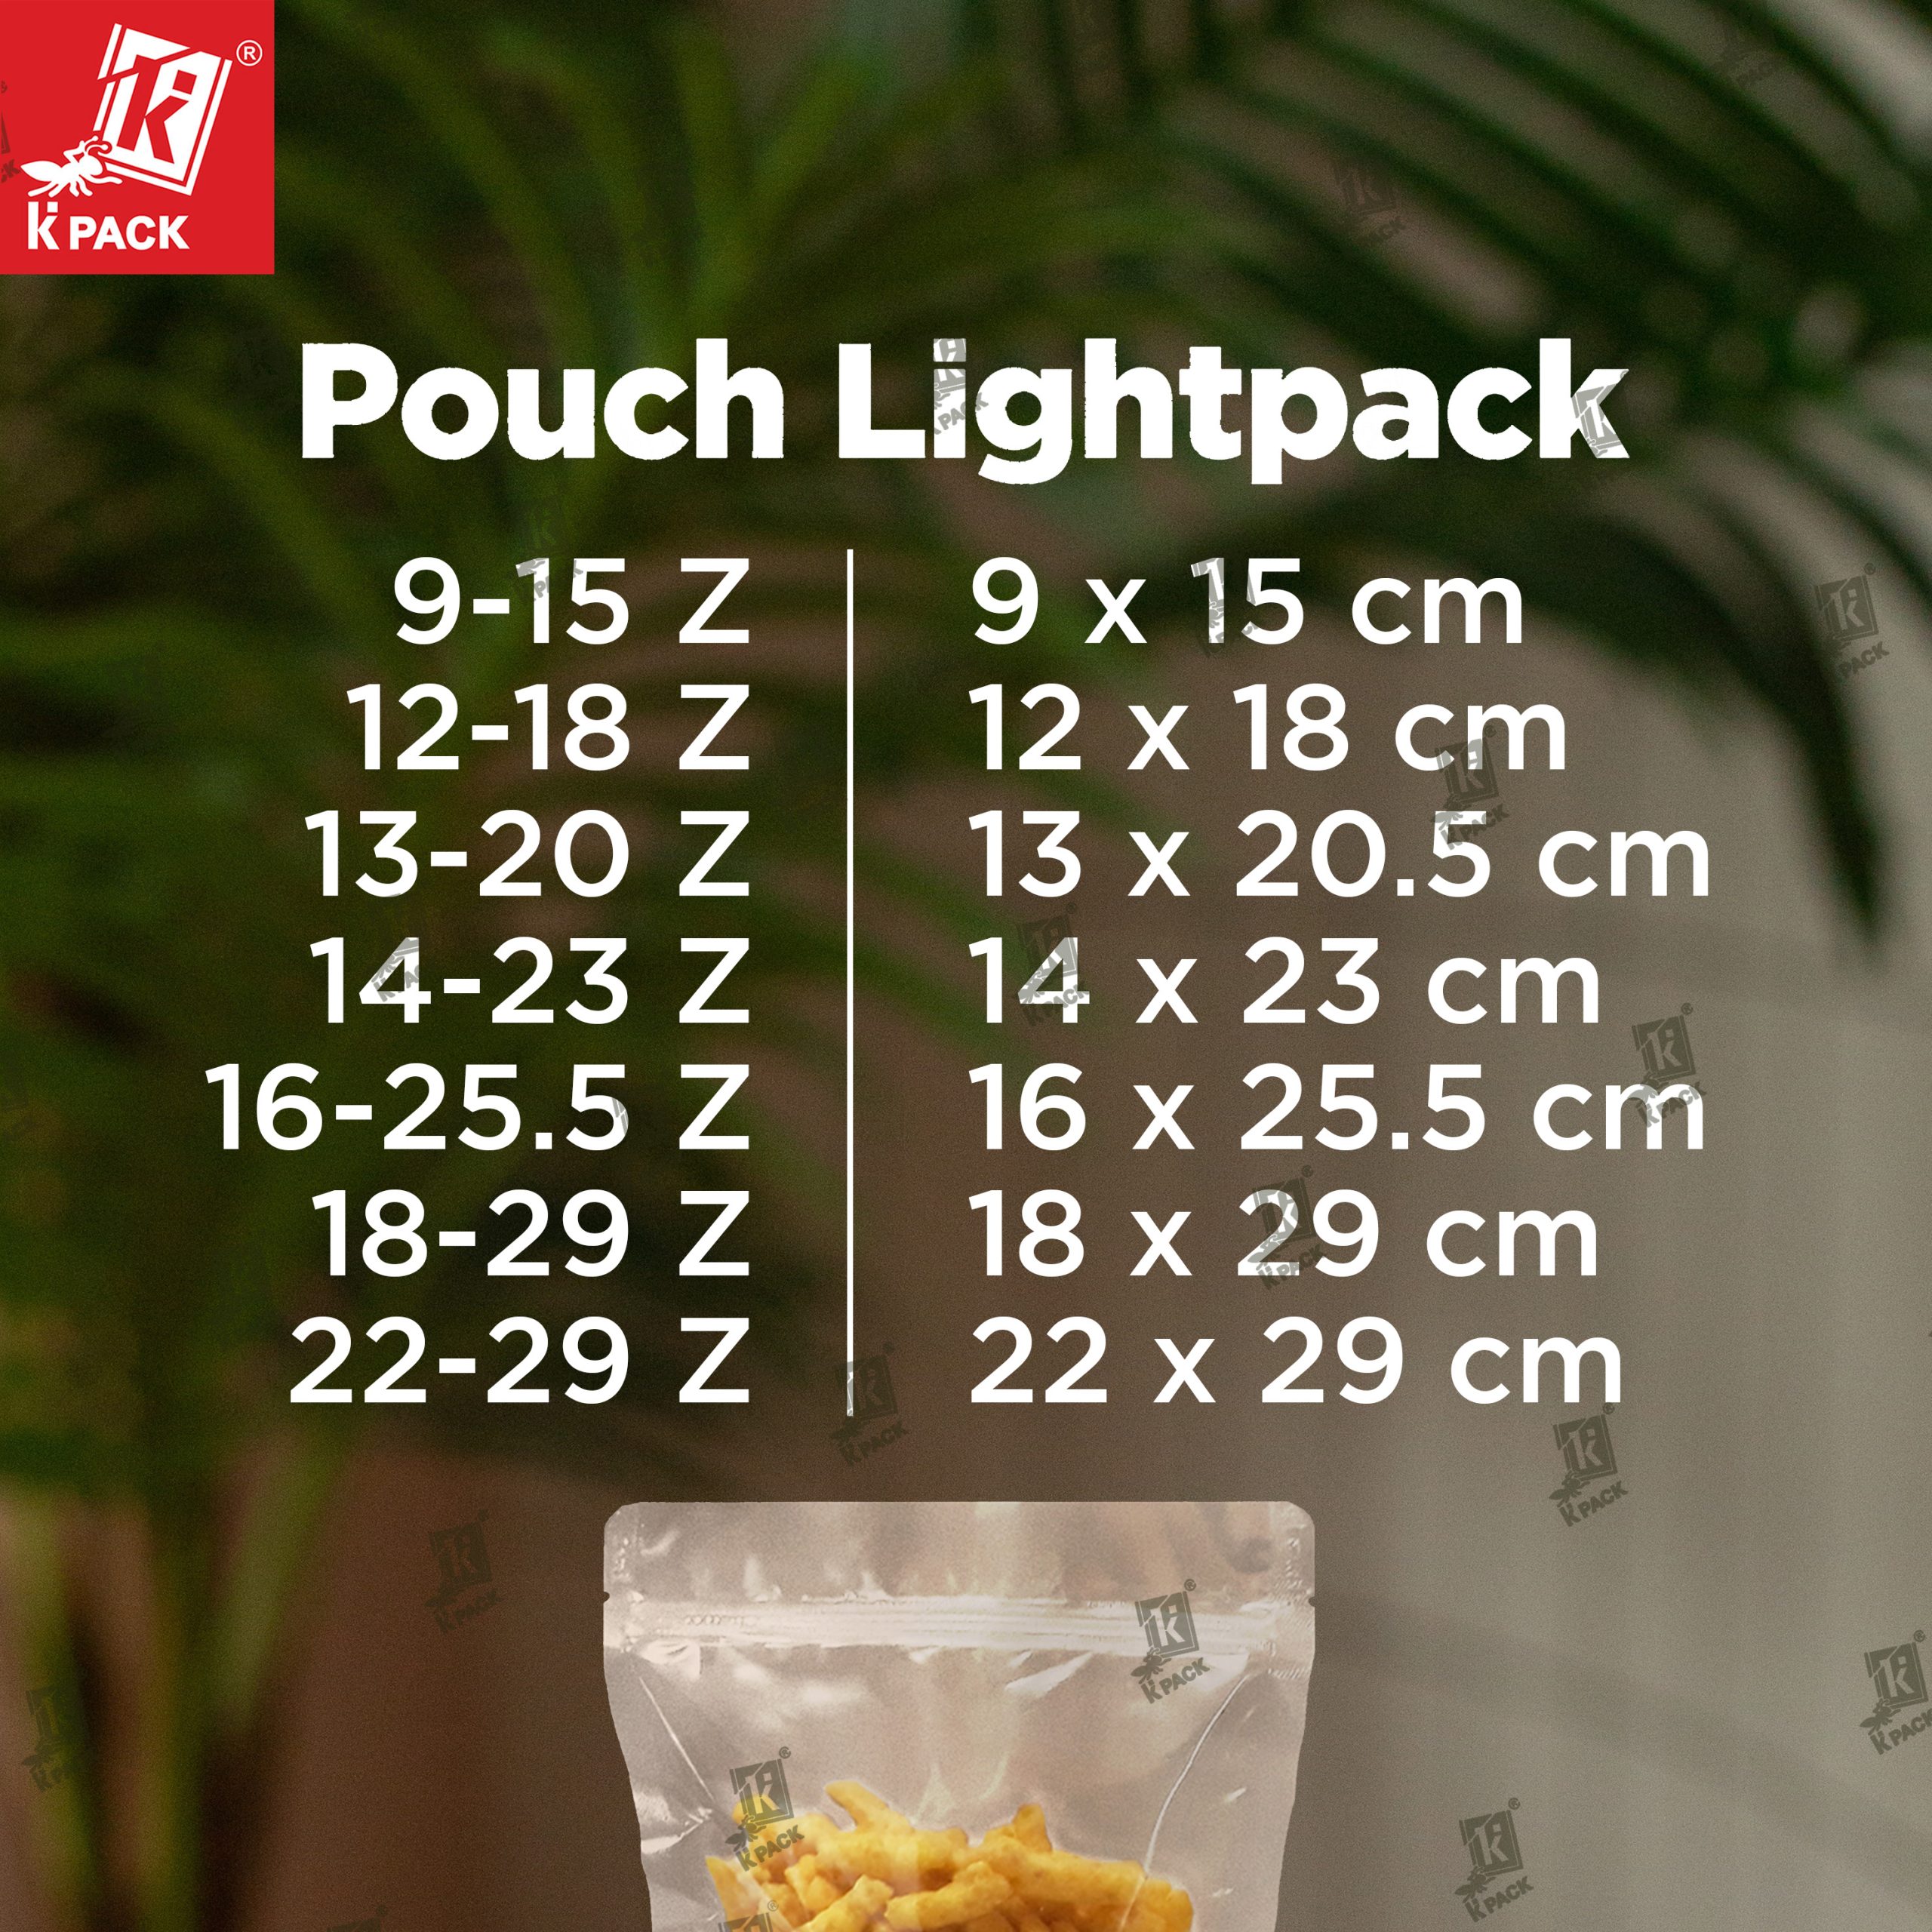 Pouch Lightpack ukuran 1.1